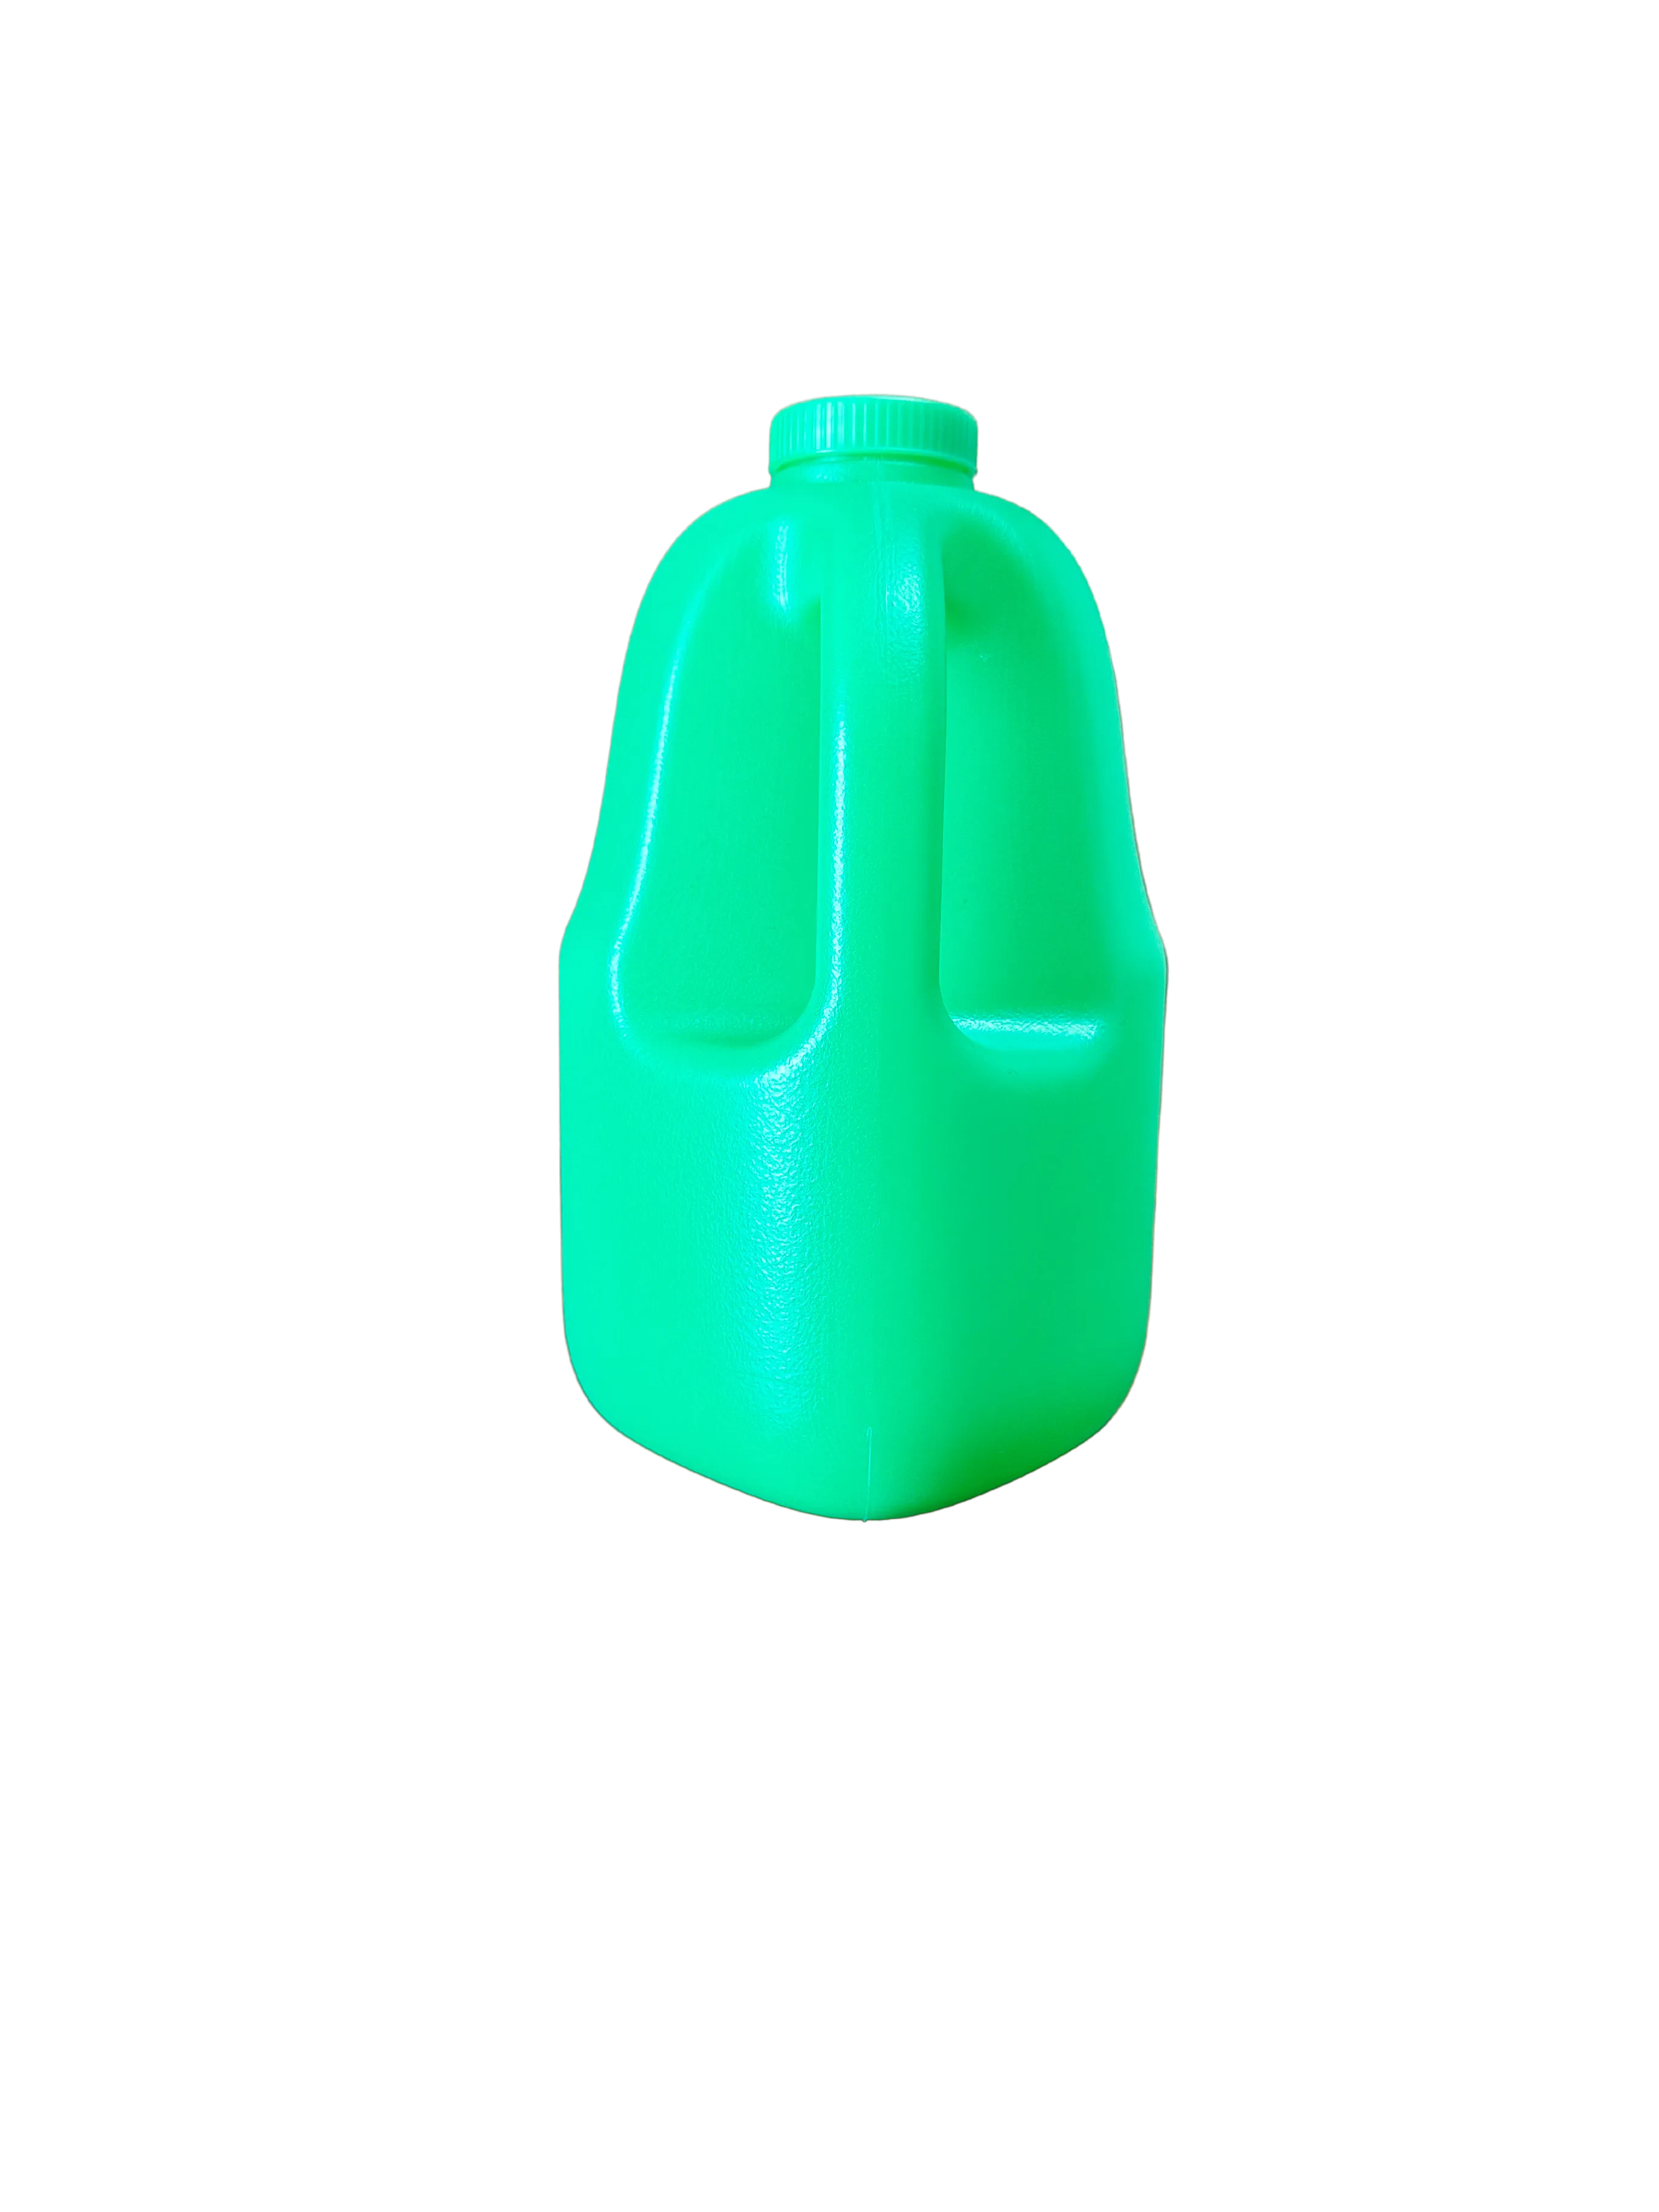 #jug color_Green